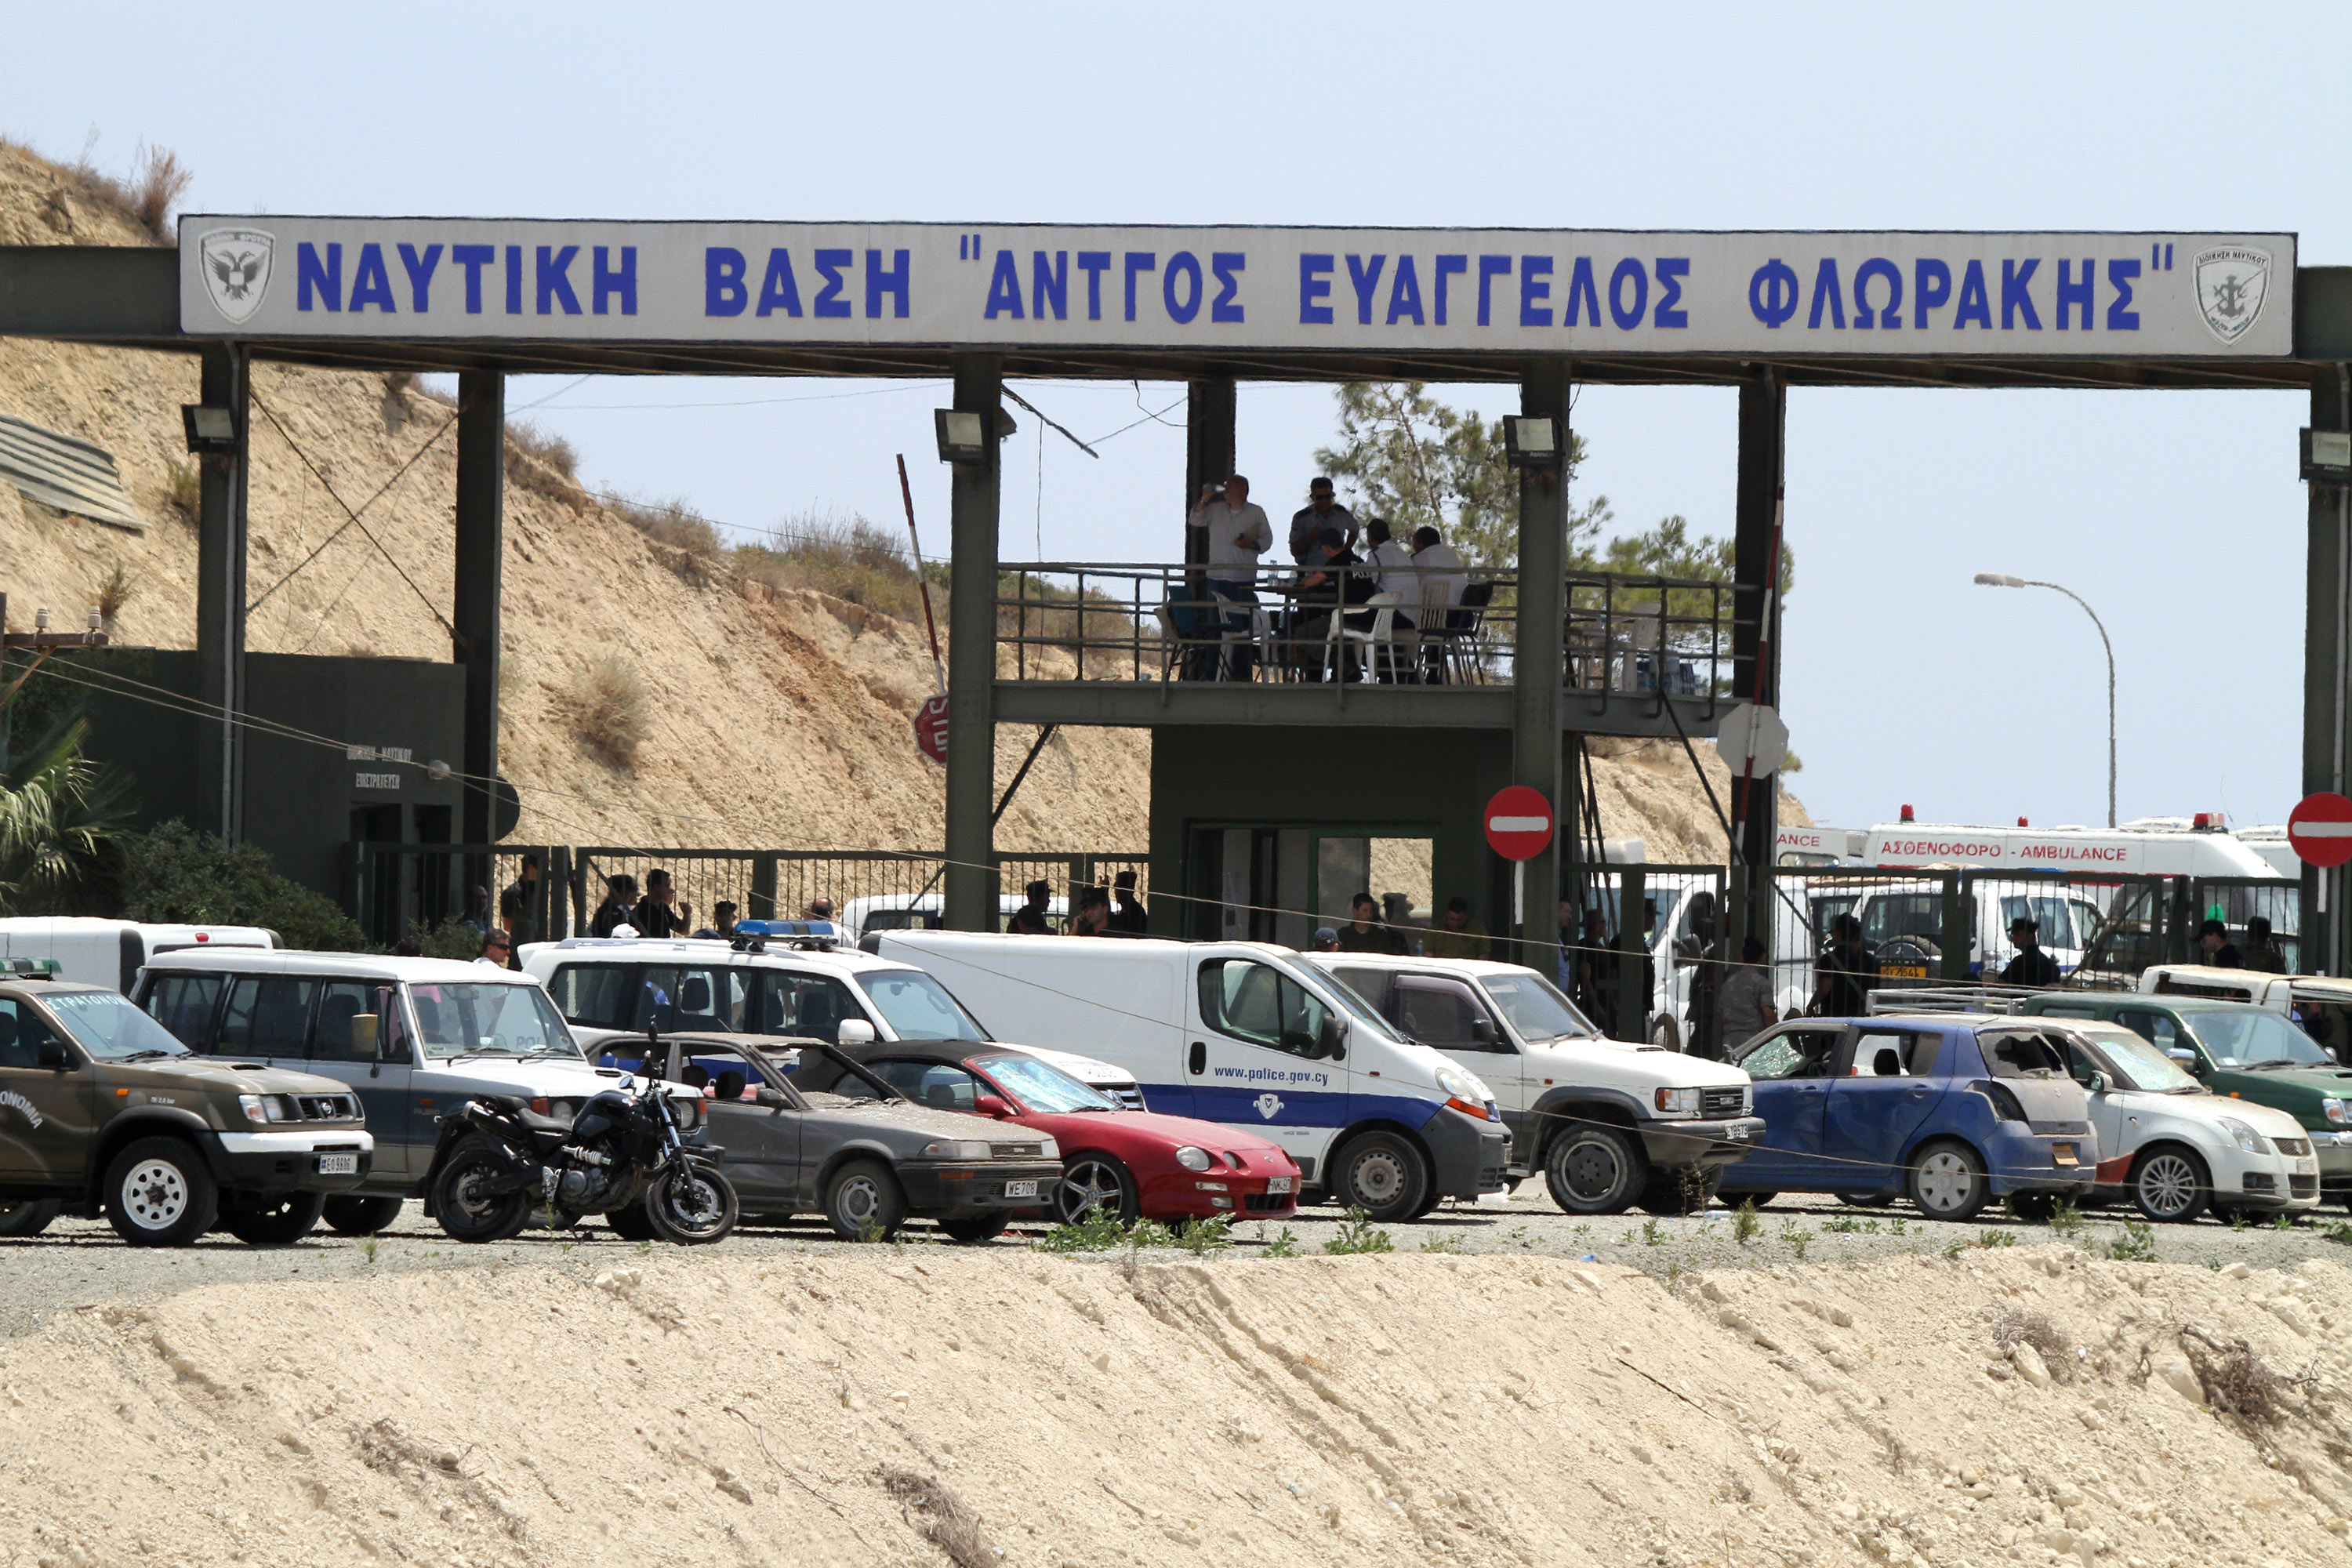 Πώς κατέληξαν τα εκρηκτικά στη ναυτική βάση της Κύπρου